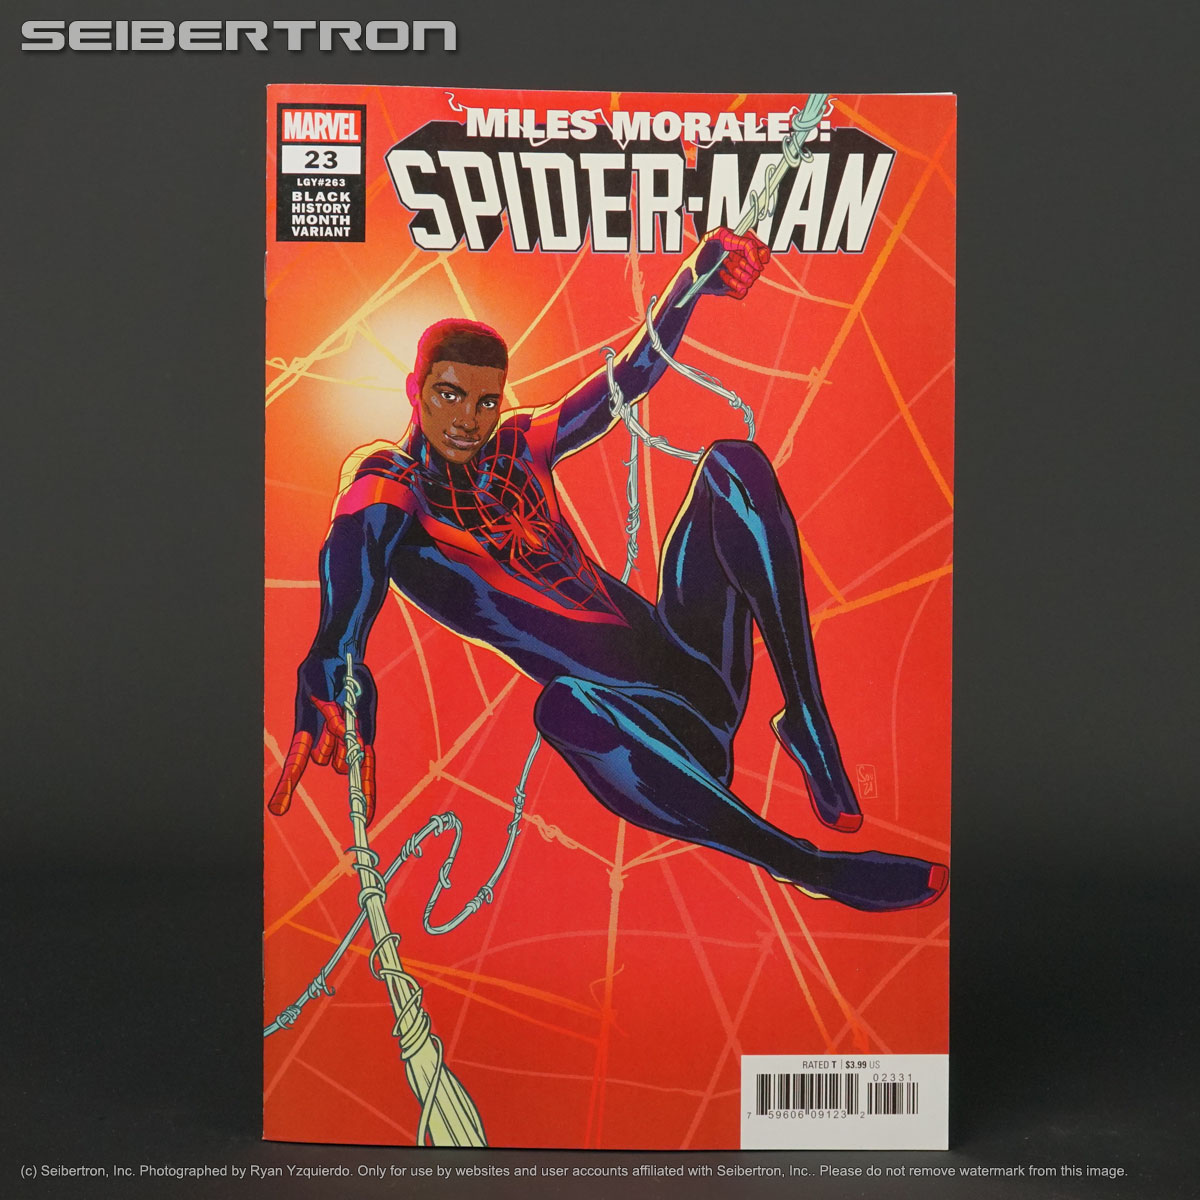 MILES MORALES SPIDER-MAN #23 variant Black History Marvel Comics 2021 (CA) Souza